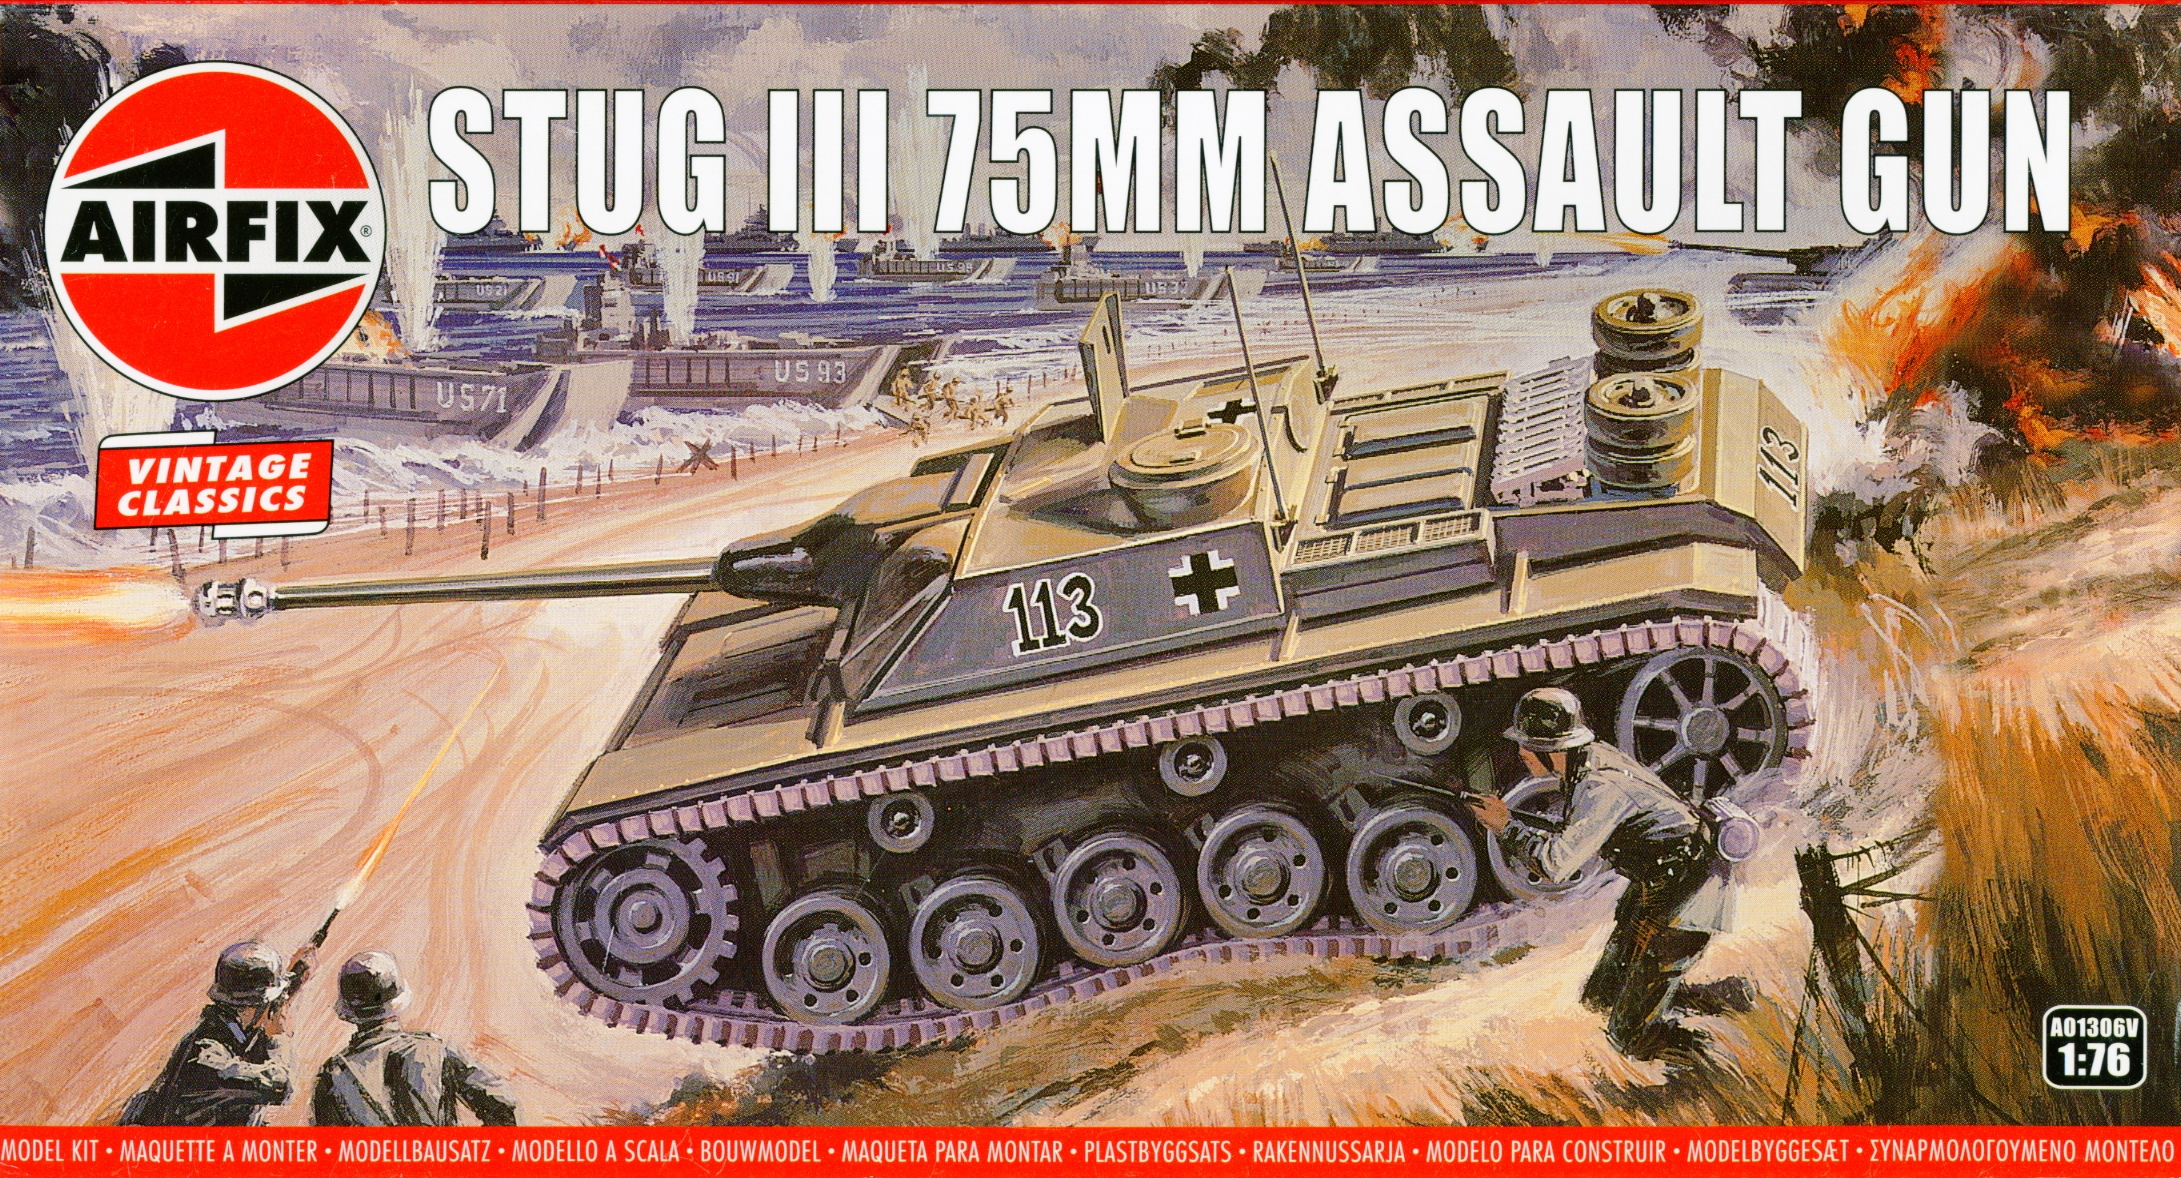 AIRFIX STUG III 75mm ASSAULT GUN 1:76 SCALE MODEL KIT WW2 GERMAN TURRETLESS TANK